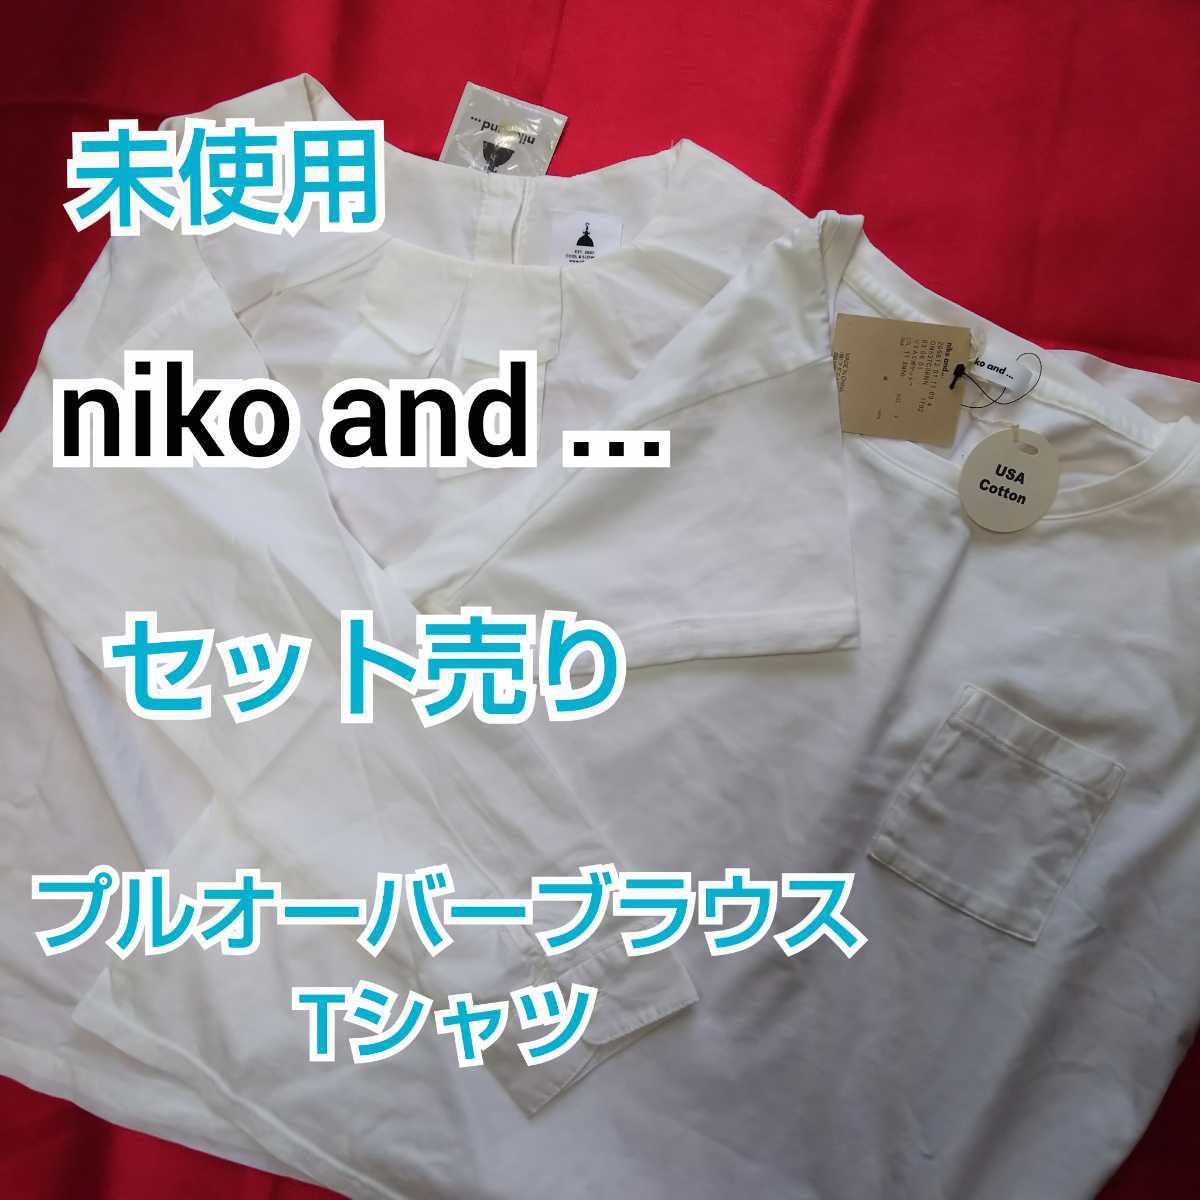 niko and ... ニコアンド プルオーバーブラウス Tシャツ ２着セット トップス